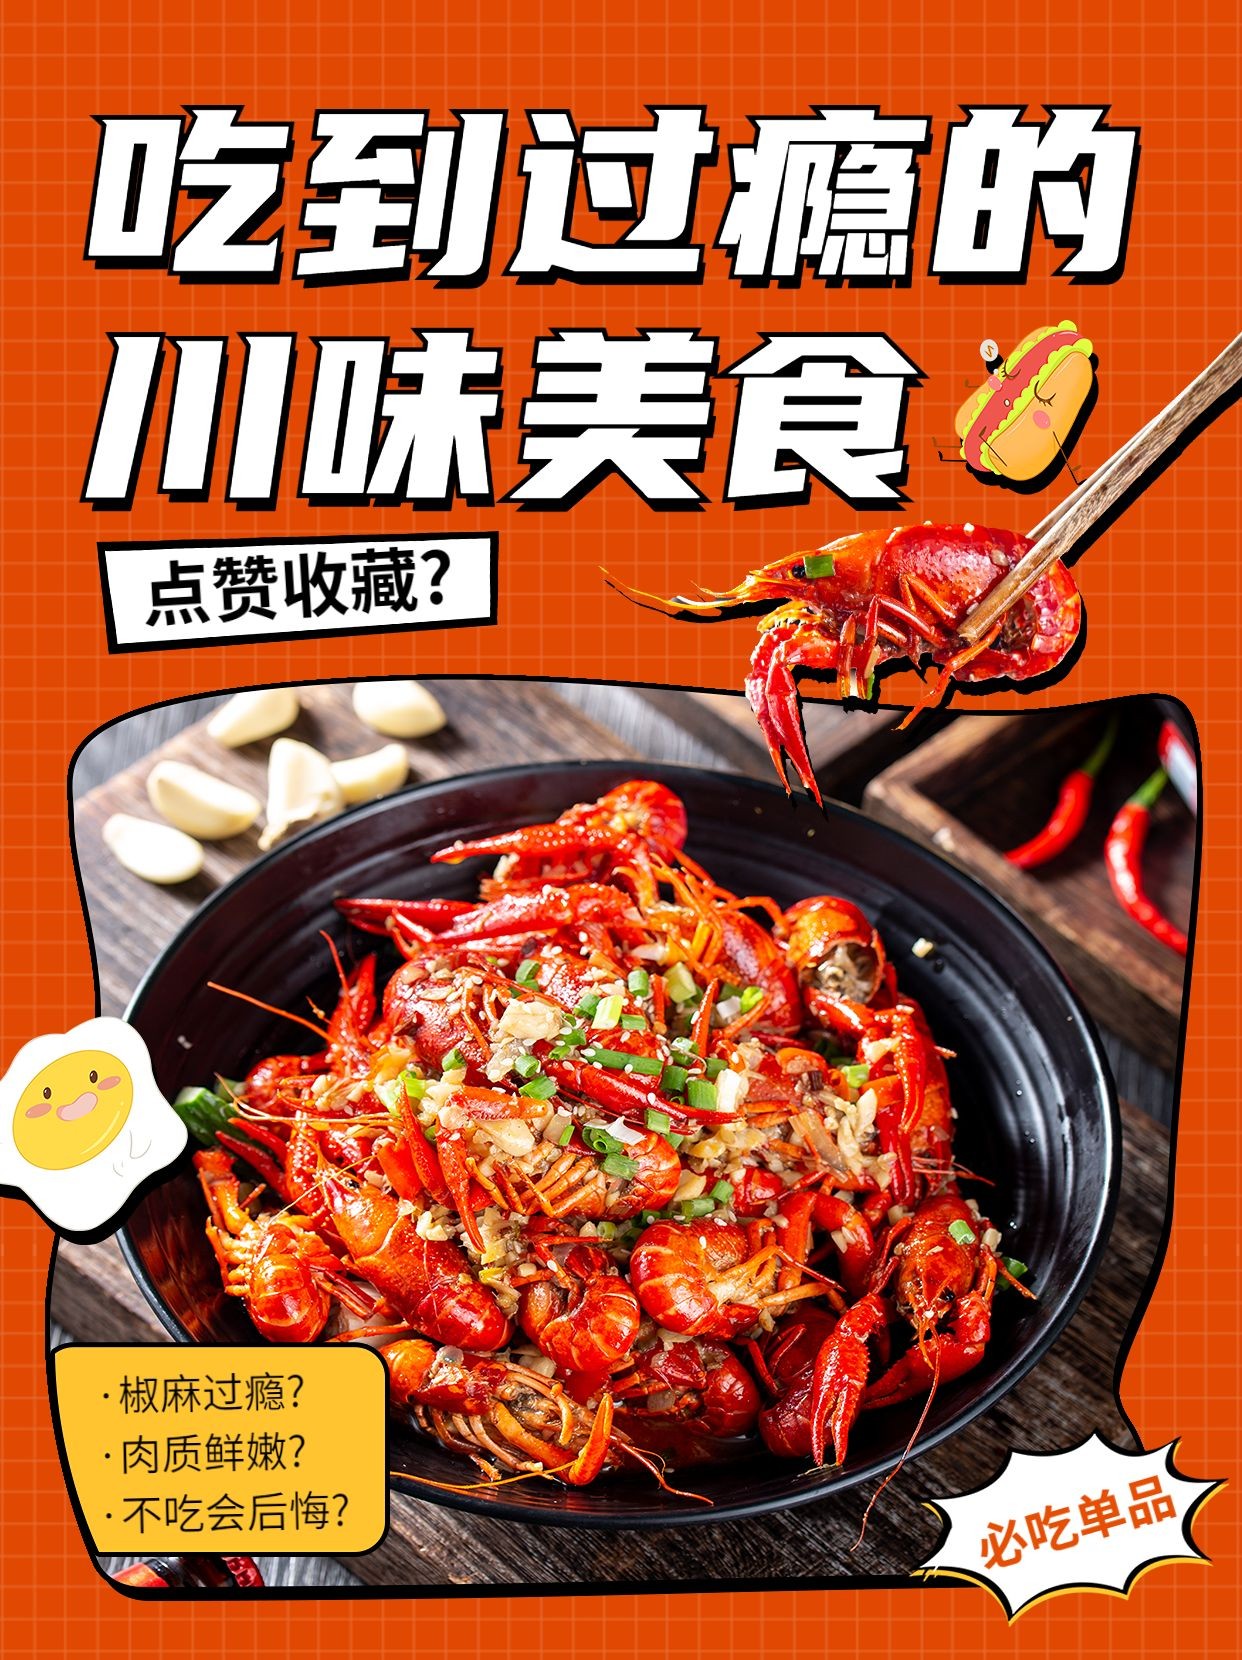 创意手绘风餐饮川菜产品营销宣传小红书配图预览效果